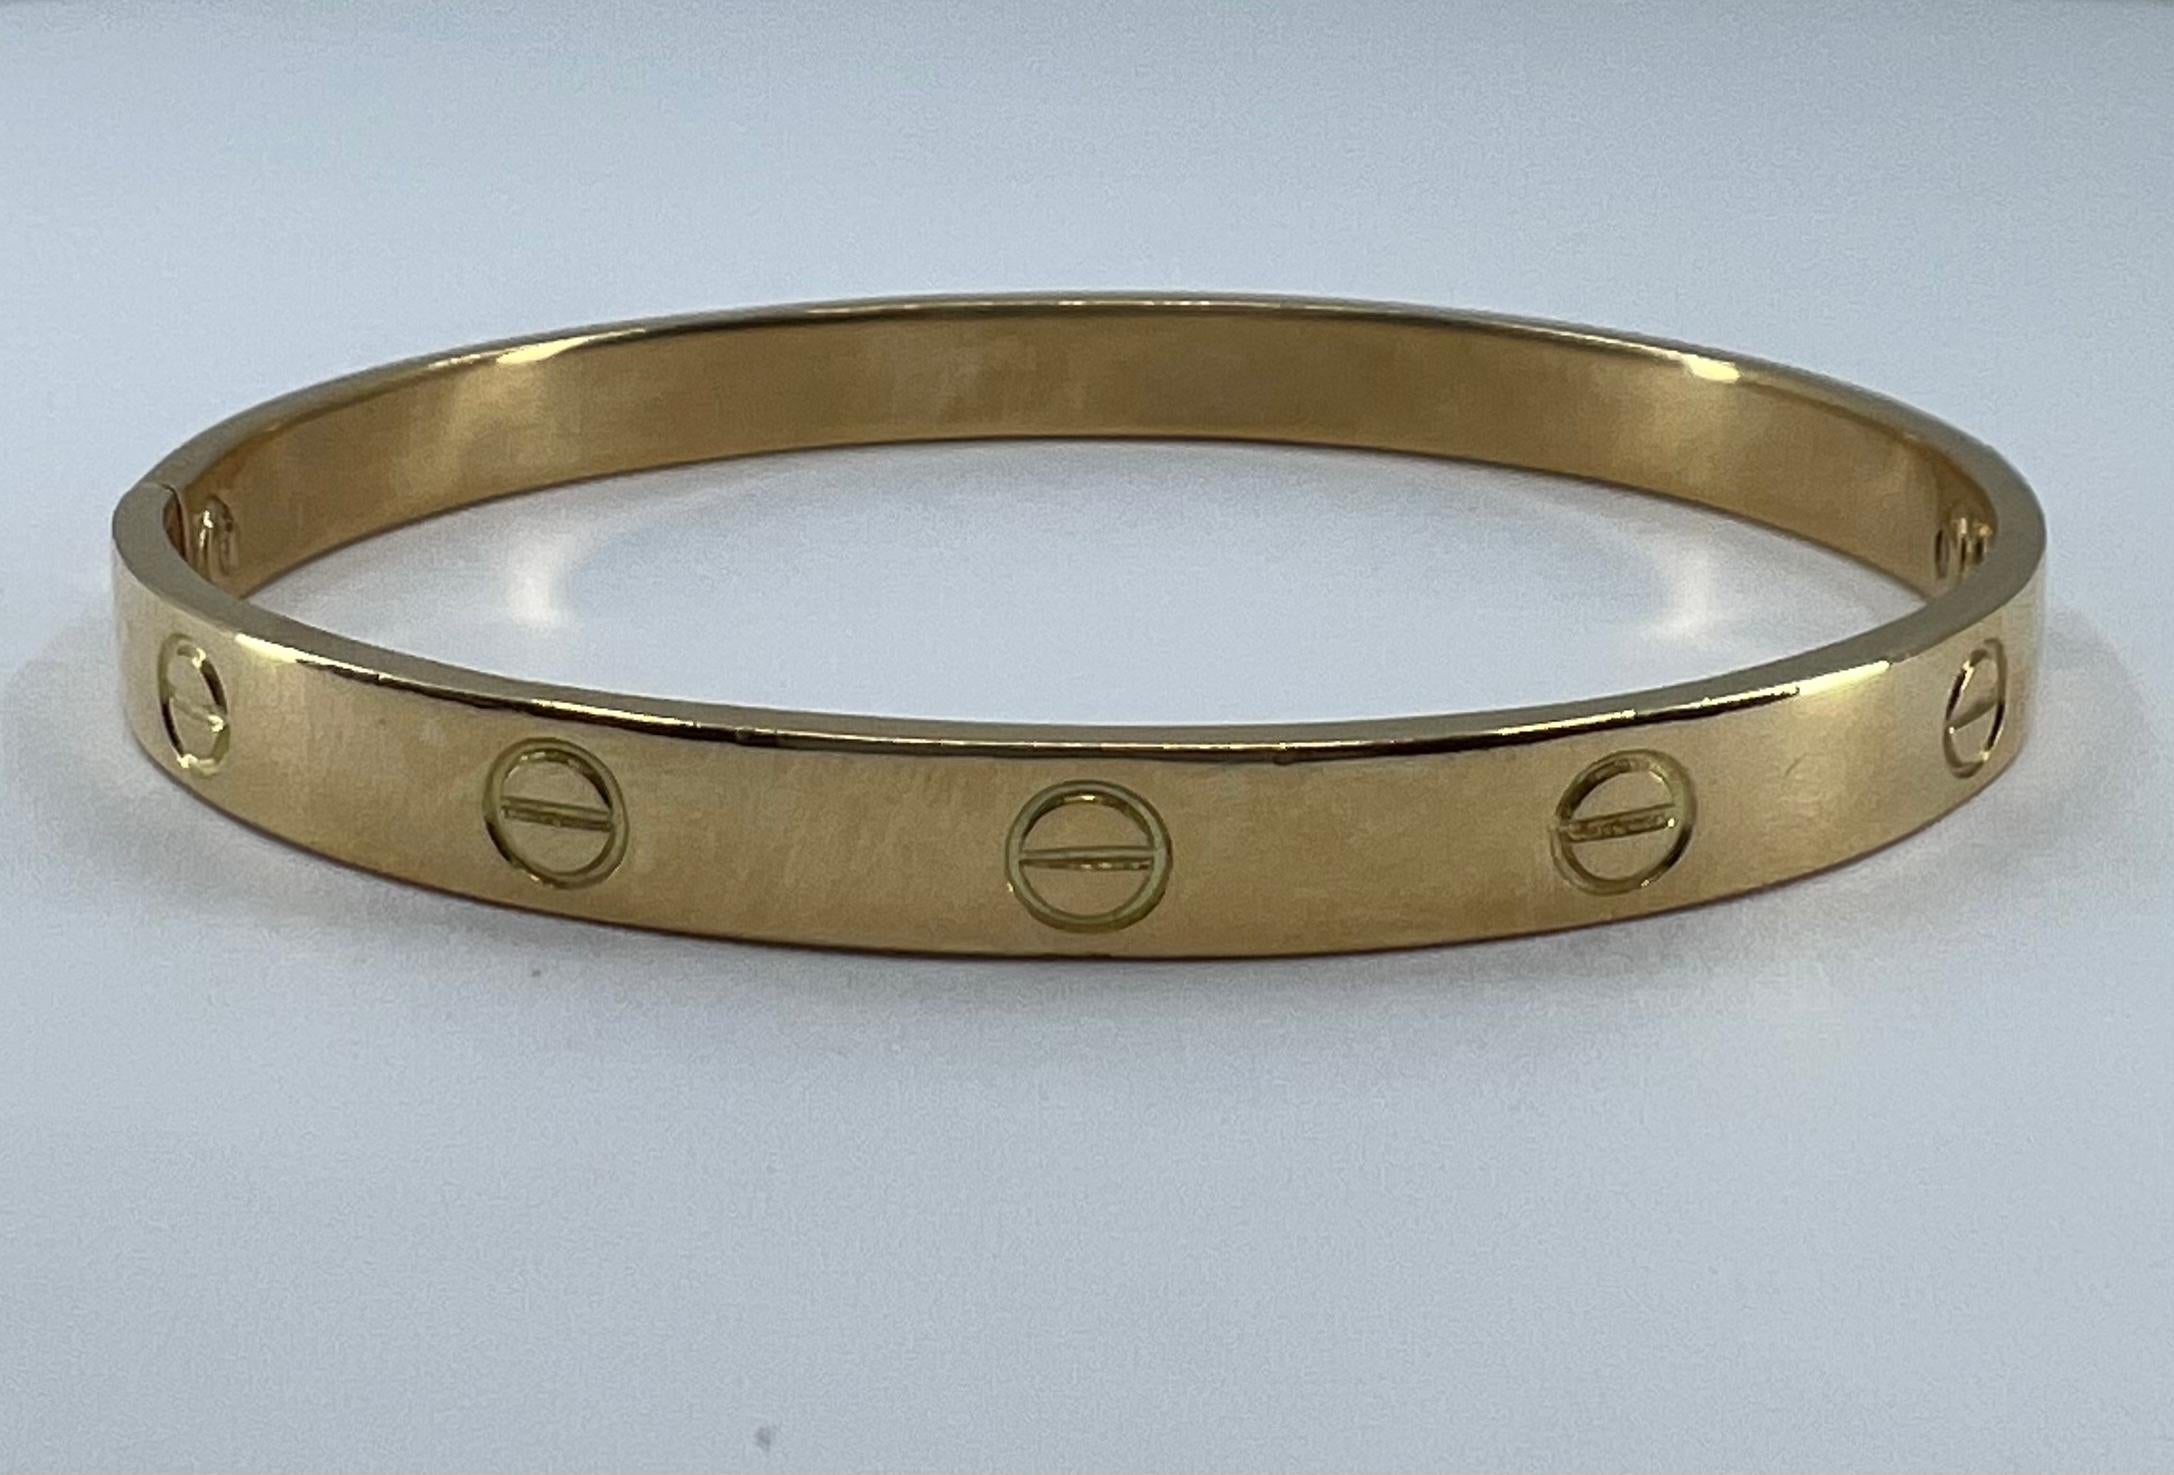 Un bracelet Love en or 18 carats vintage de Cartier datant des années 1970 (estampillé).

Symbole d'engagement, le bracelet d'amour a été conçu comme une pièce minimaliste en 1969 et ne pouvait que devenir emblématique.

Le bracelet Love de Cartier